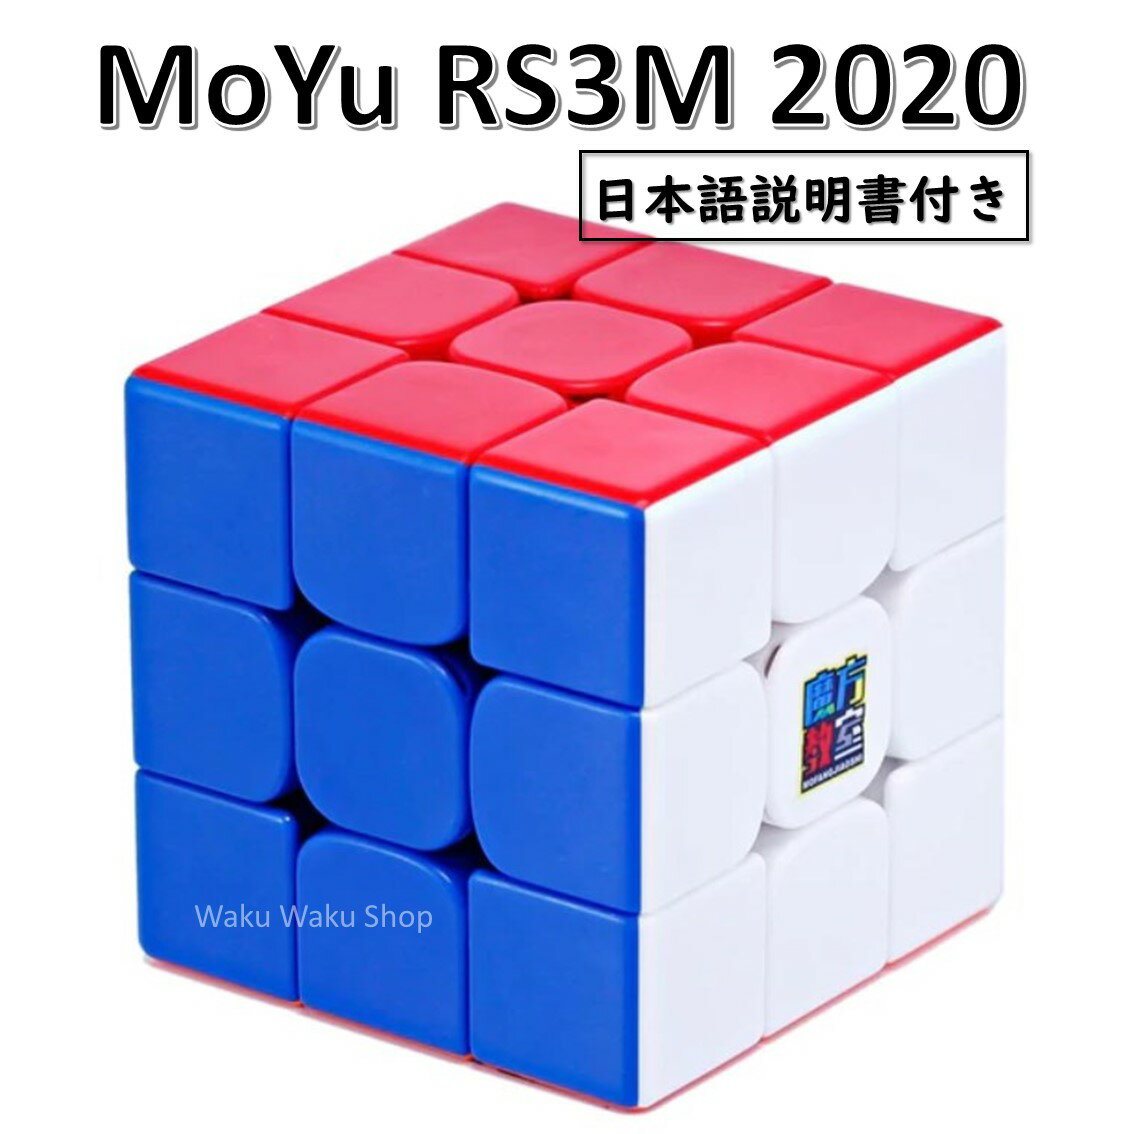 【日本語説明書付き】 【安心の保証付き】 【正規販売店】 Moyu Cubing Classroom RS3M 2020 磁石搭載 3x3x3キューブ…